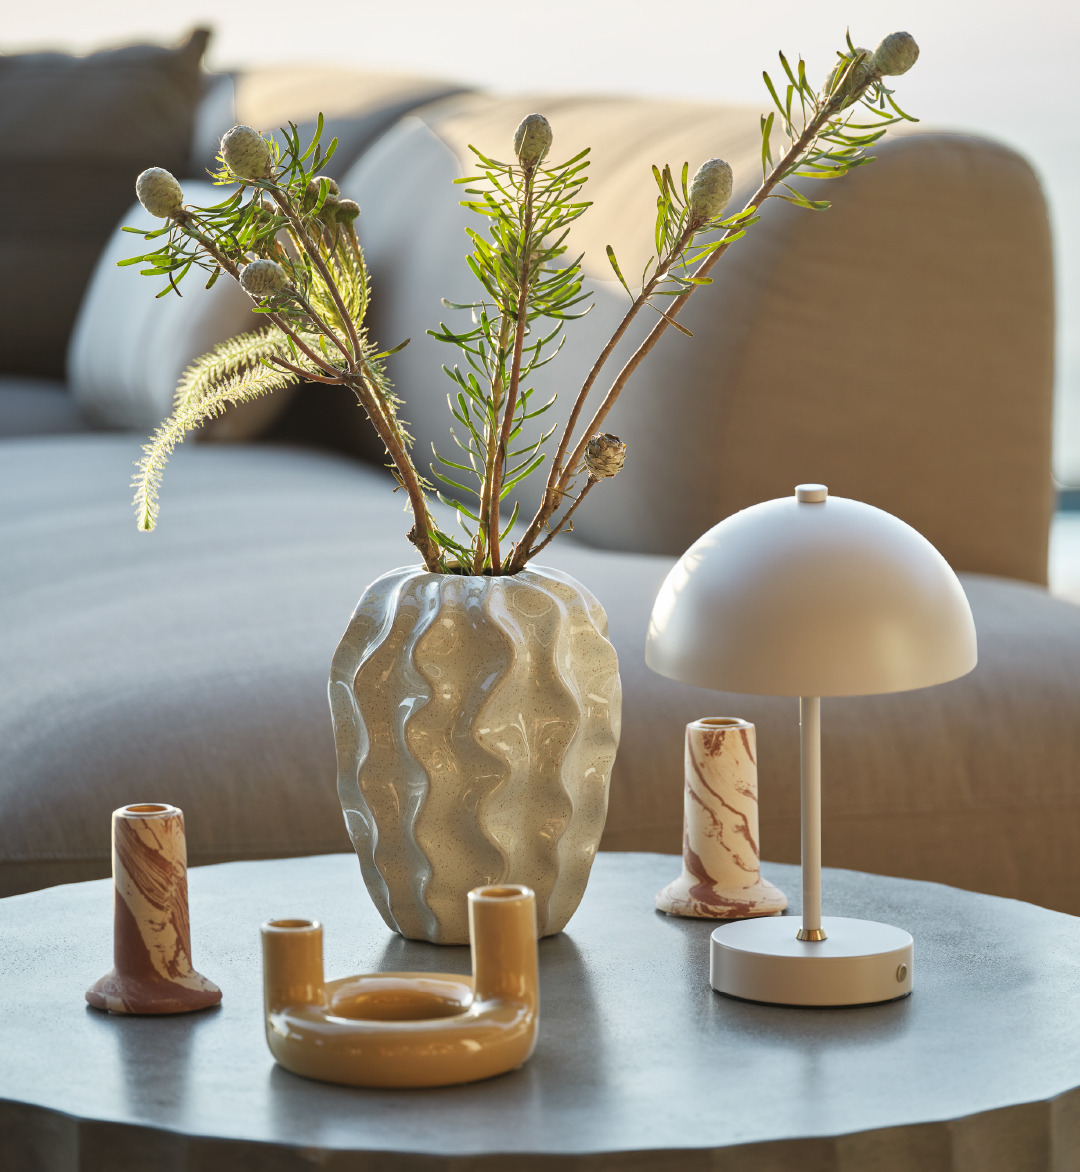 Et loungebord pyntet med vase, telysholdere og batterilampe